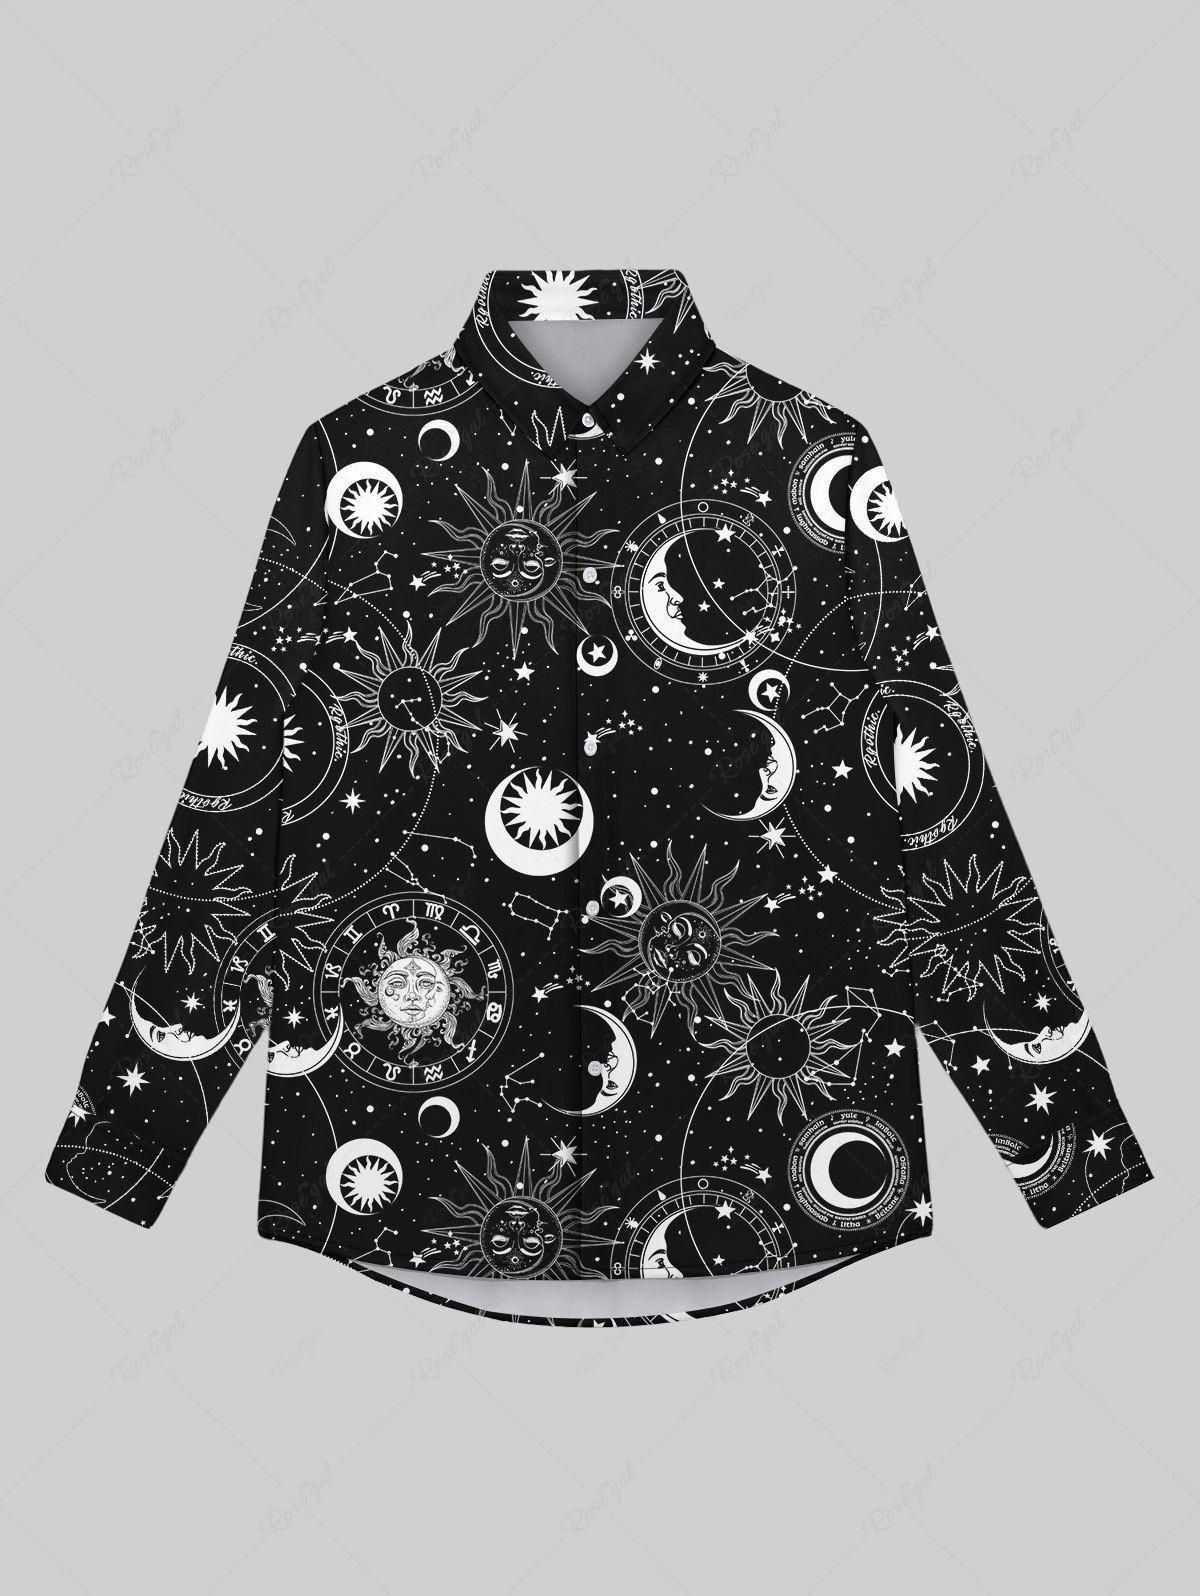 Gothic Galaxy Sun Moon Star Print Button Down Shirt For Men - 8xl